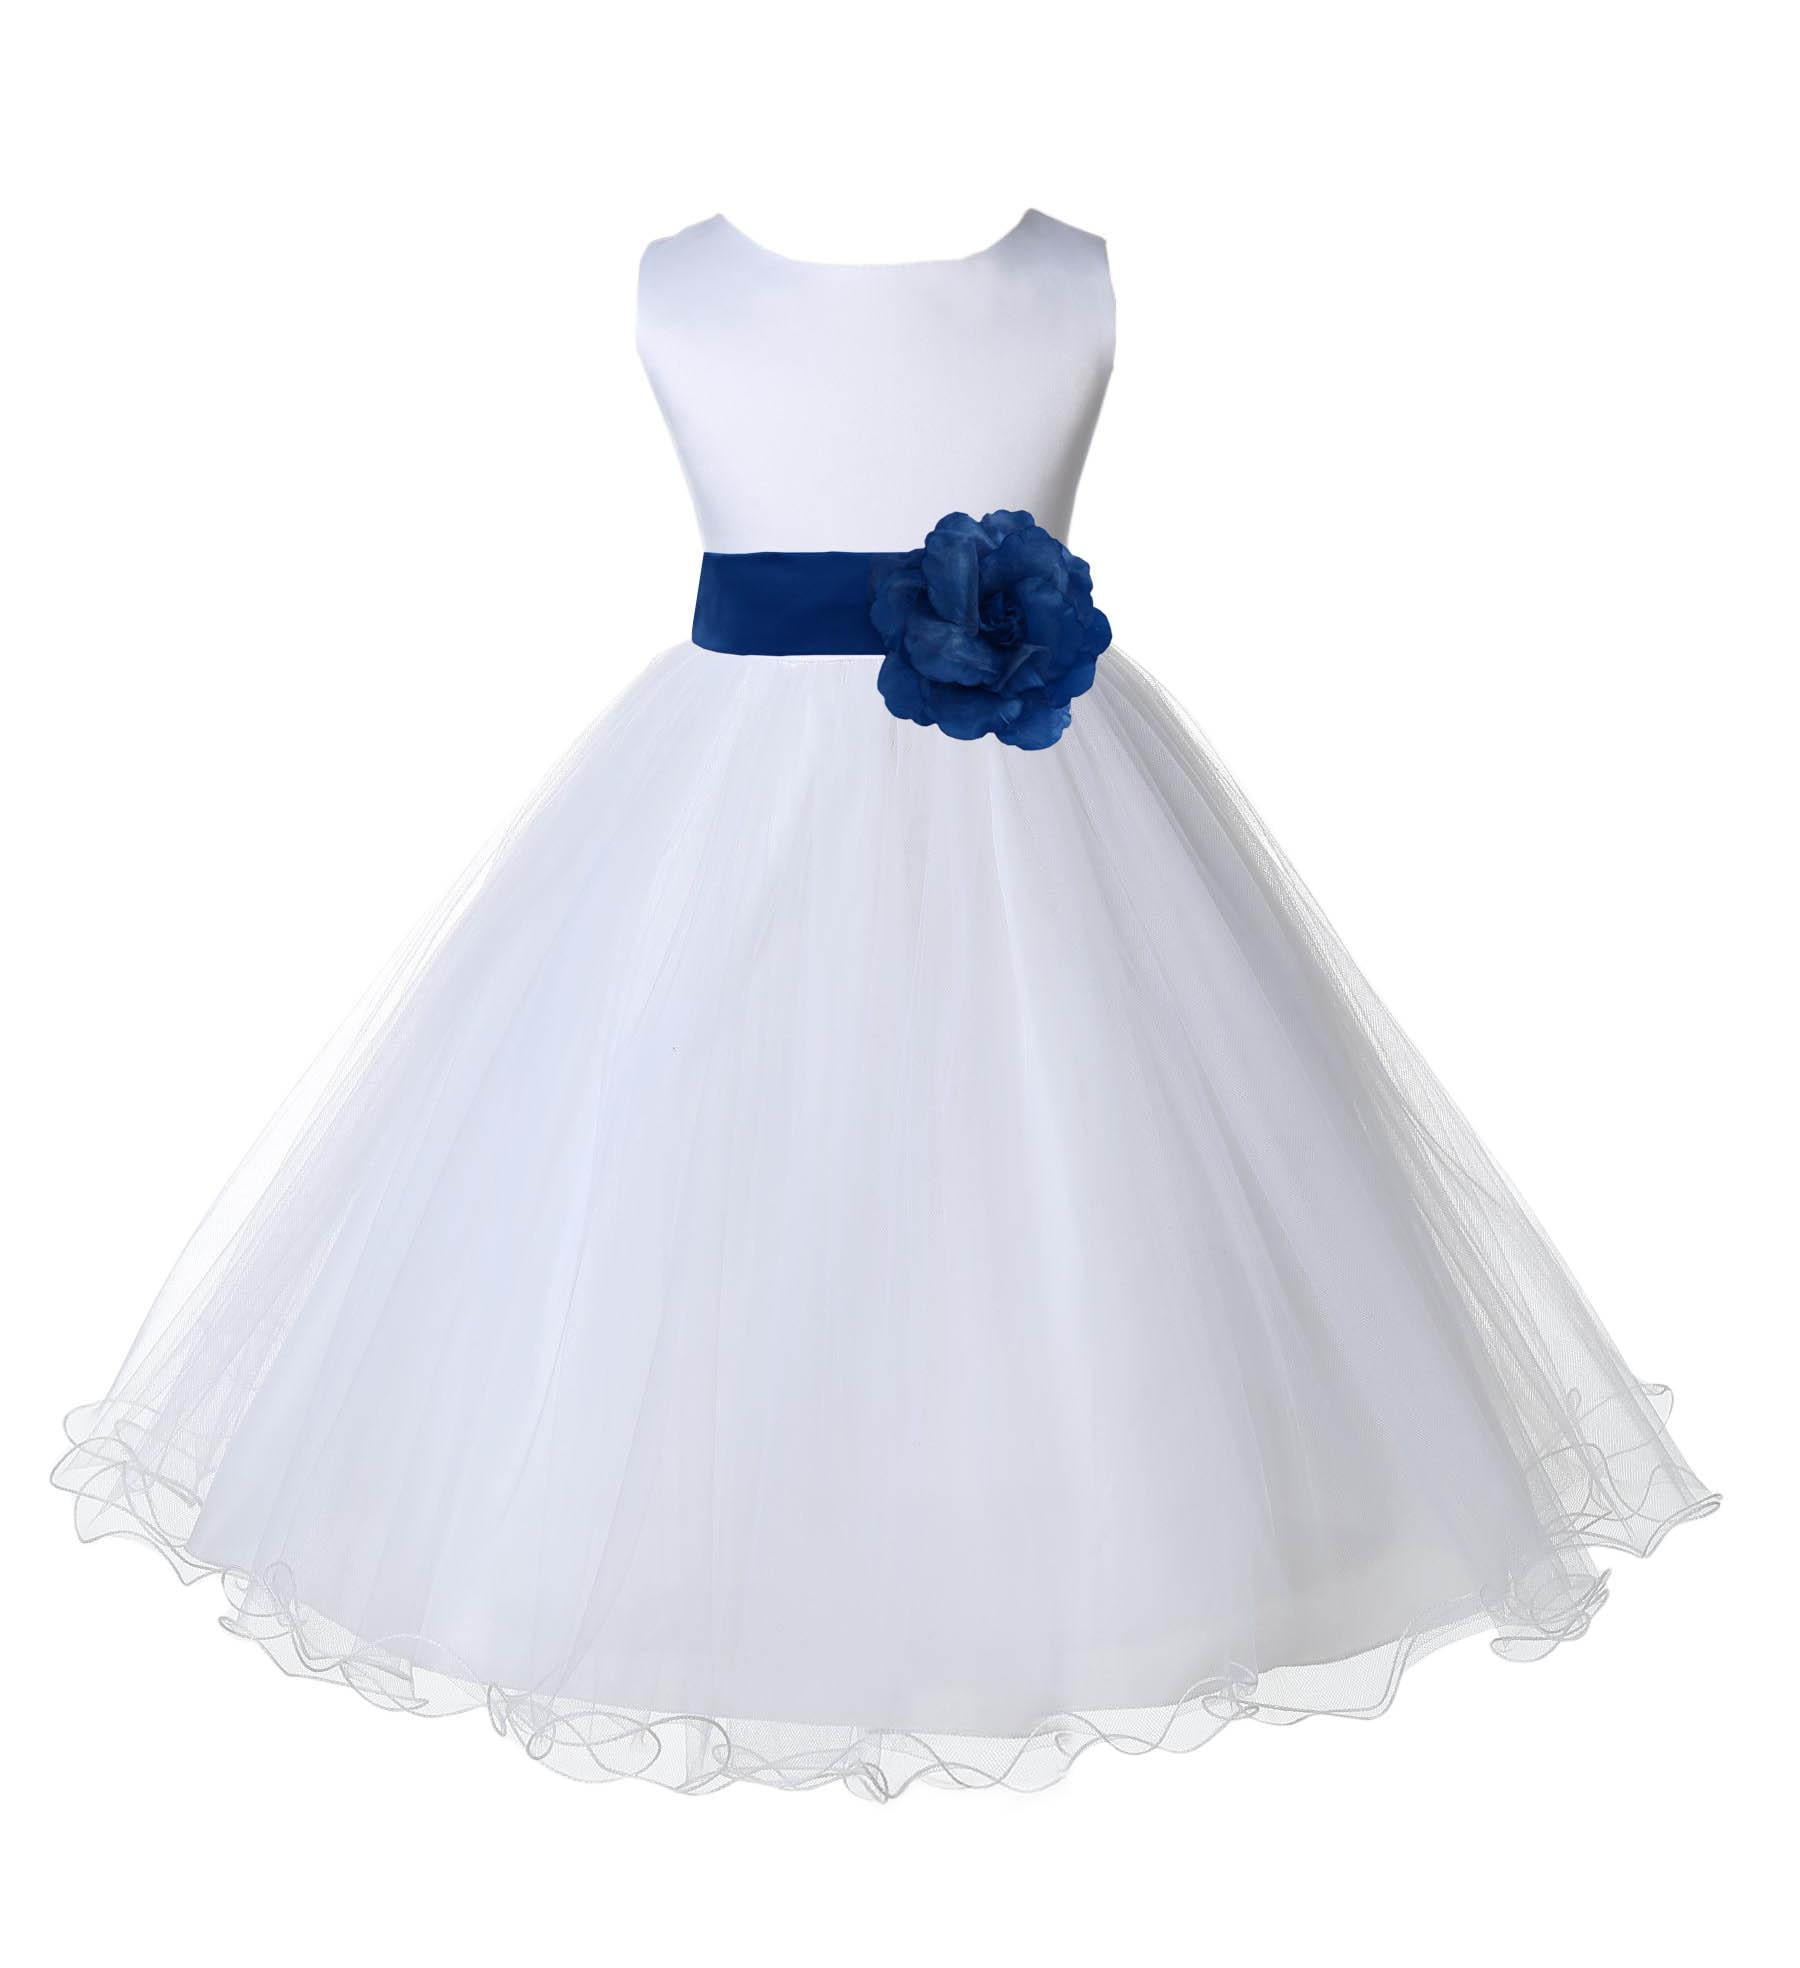 White Flower Girls First Communion Dress Polka Dot Tulle Easter Wedding Party 